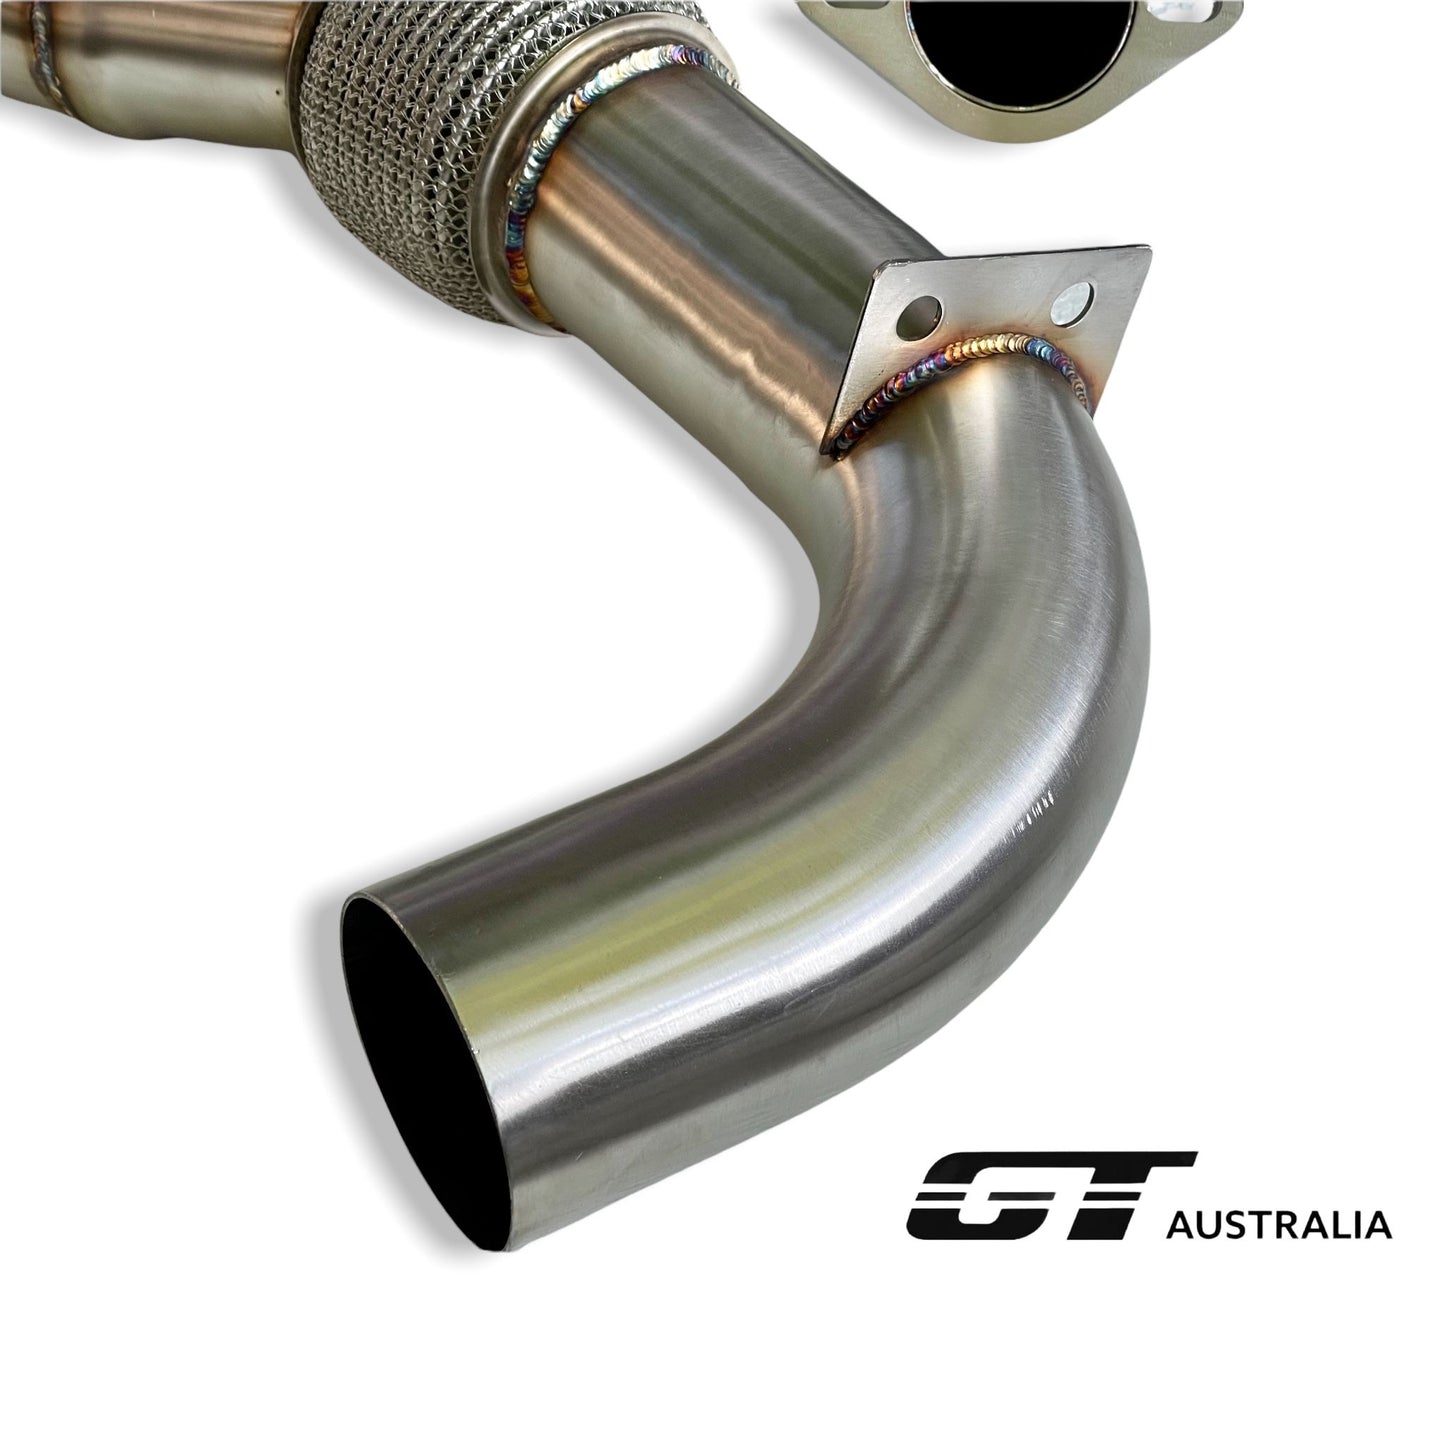 Lotus Exige 410 Sport  Stainless Steel 304 Y-pipe by GT Australia